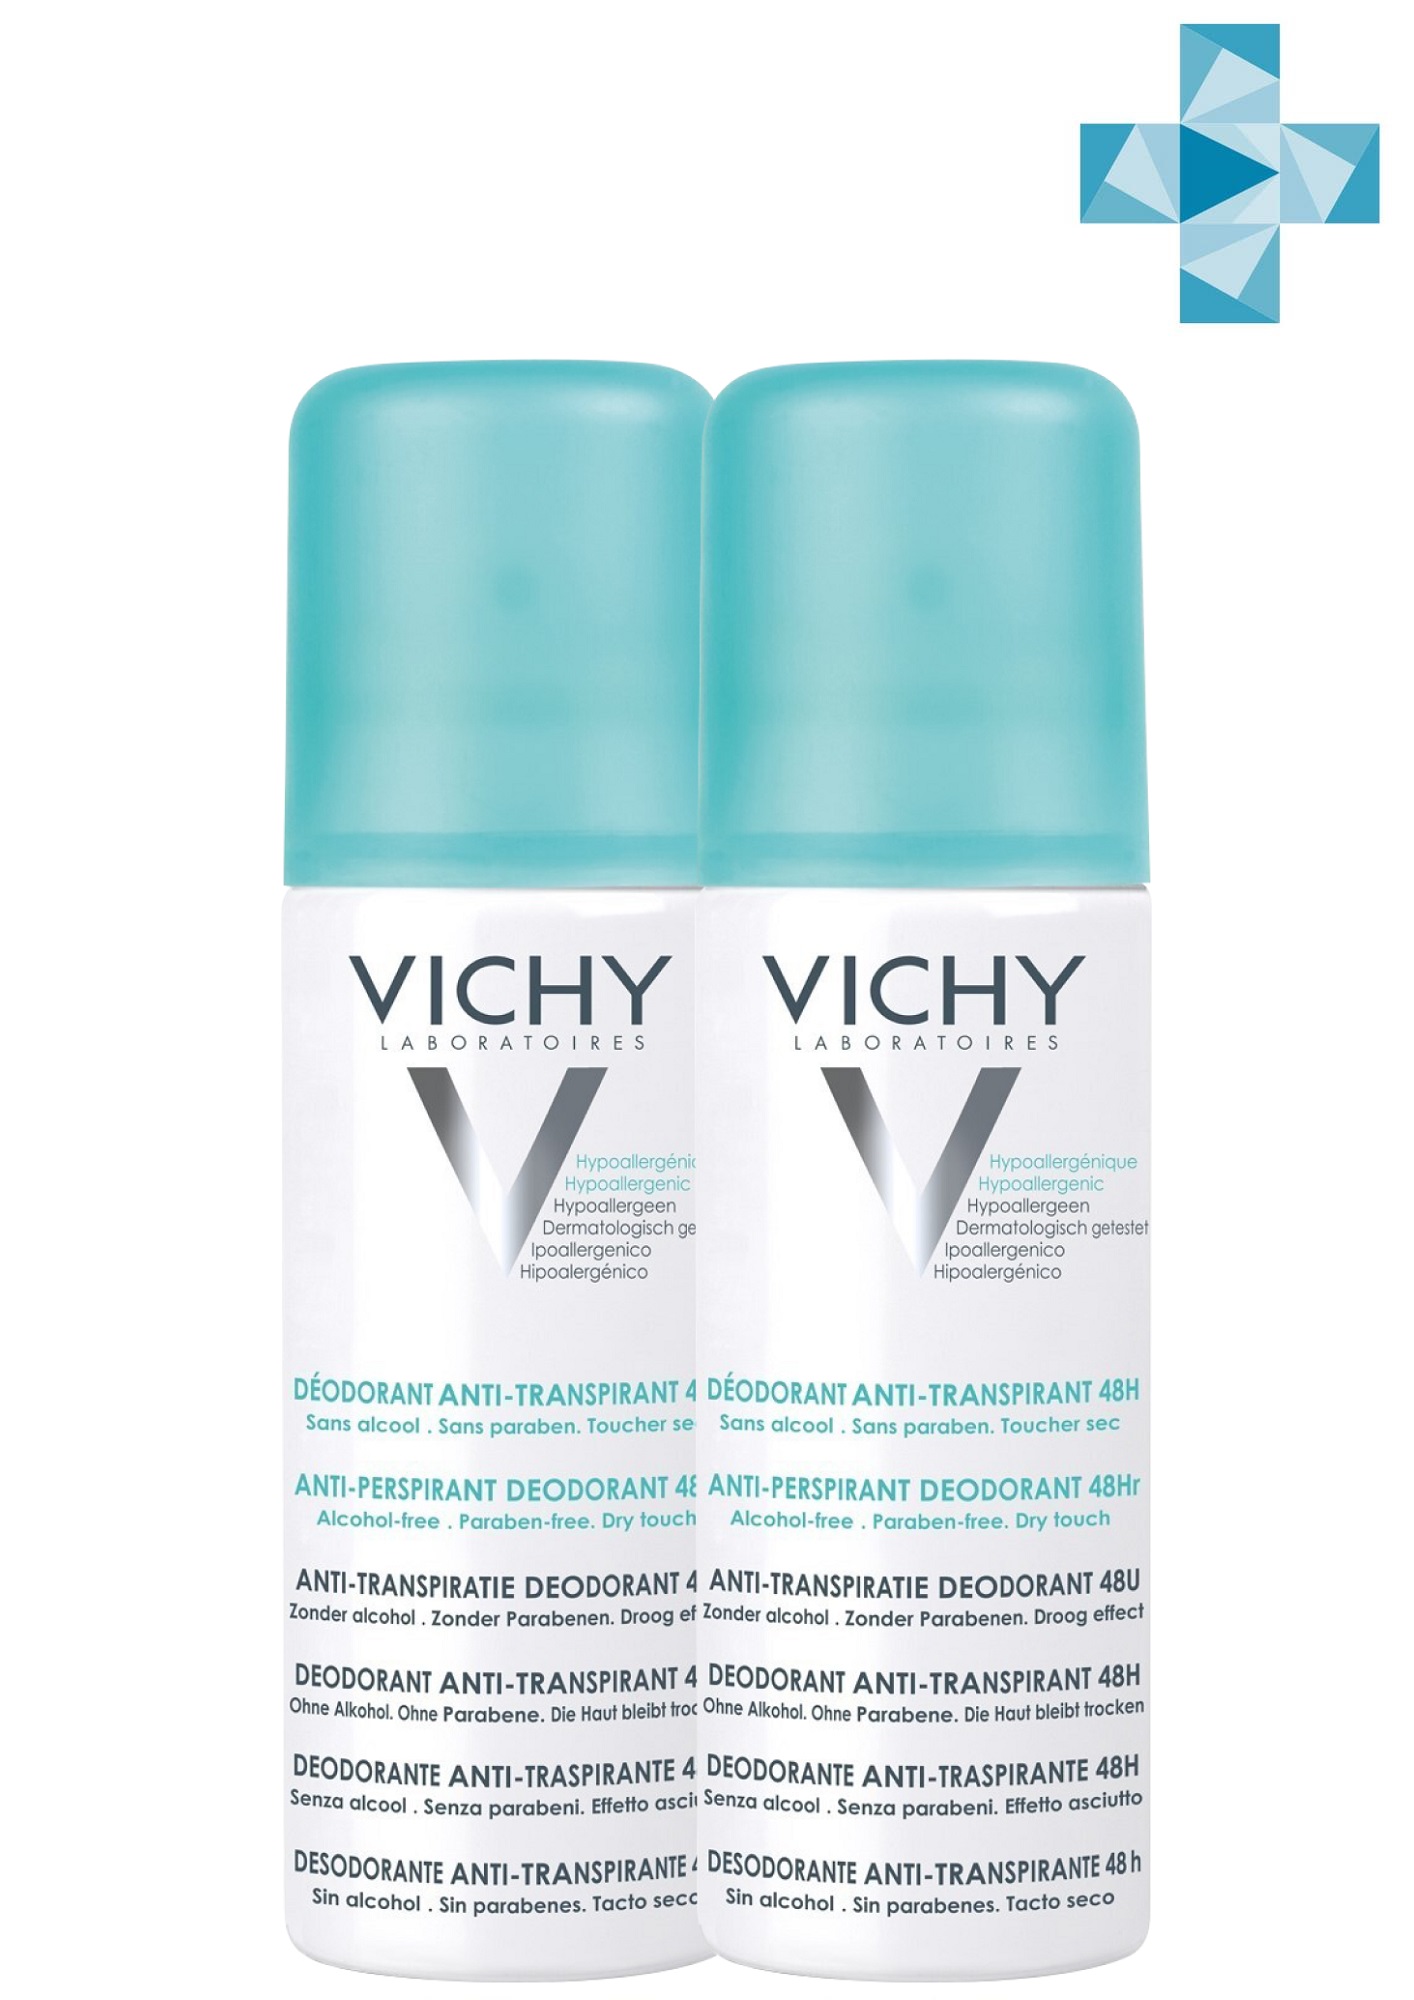 Vichy Комплект Дезодорант-аэрозоль регулирующий избыточное потоотделение 48 часов, 2 х 125 мл (Vichy, Deodorant) дезодорант аэрозоль vichy 48h 125 мл